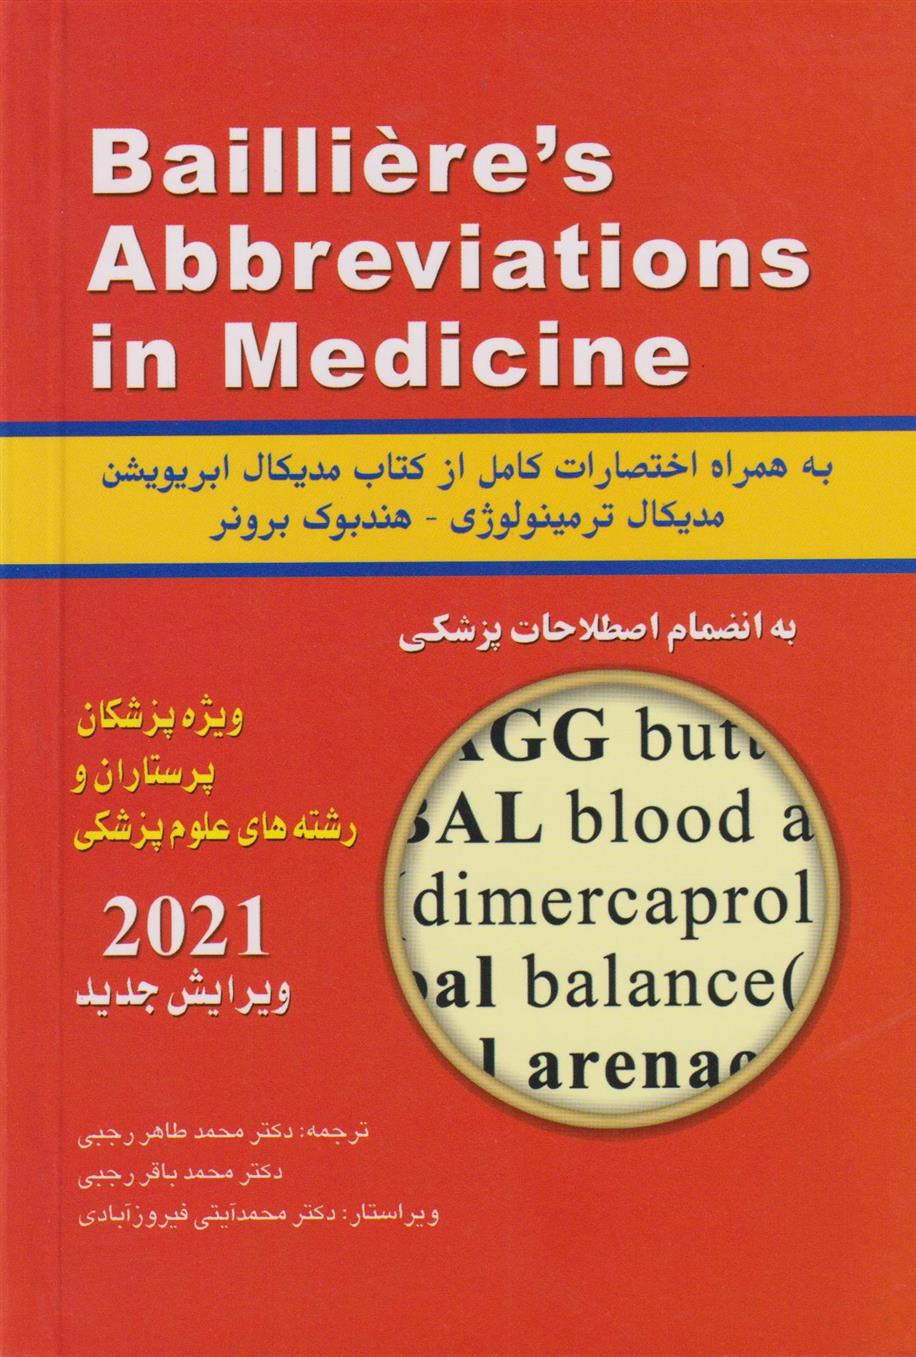 کتاب فرهنگ اختصارات پزشکی Bailliere's;